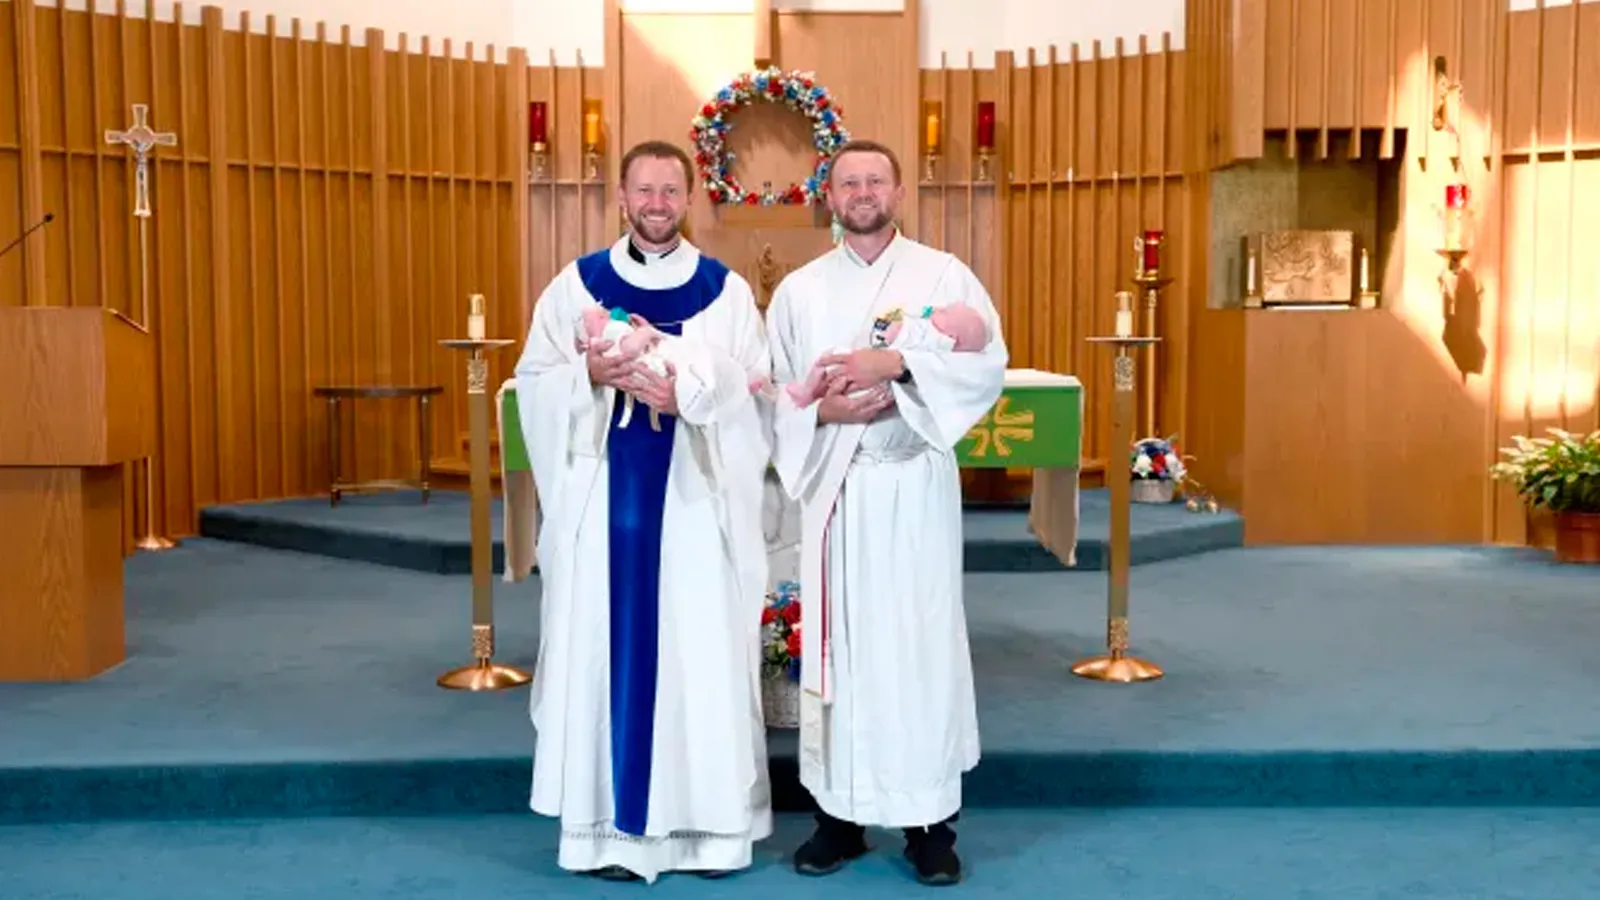 Gemelos bautizados por gemelos — Gianna y Andrew Renwick con el P. Ben y el diácono Luke Daghir. | Credit: Don Wojtaszek?w=200&h=150